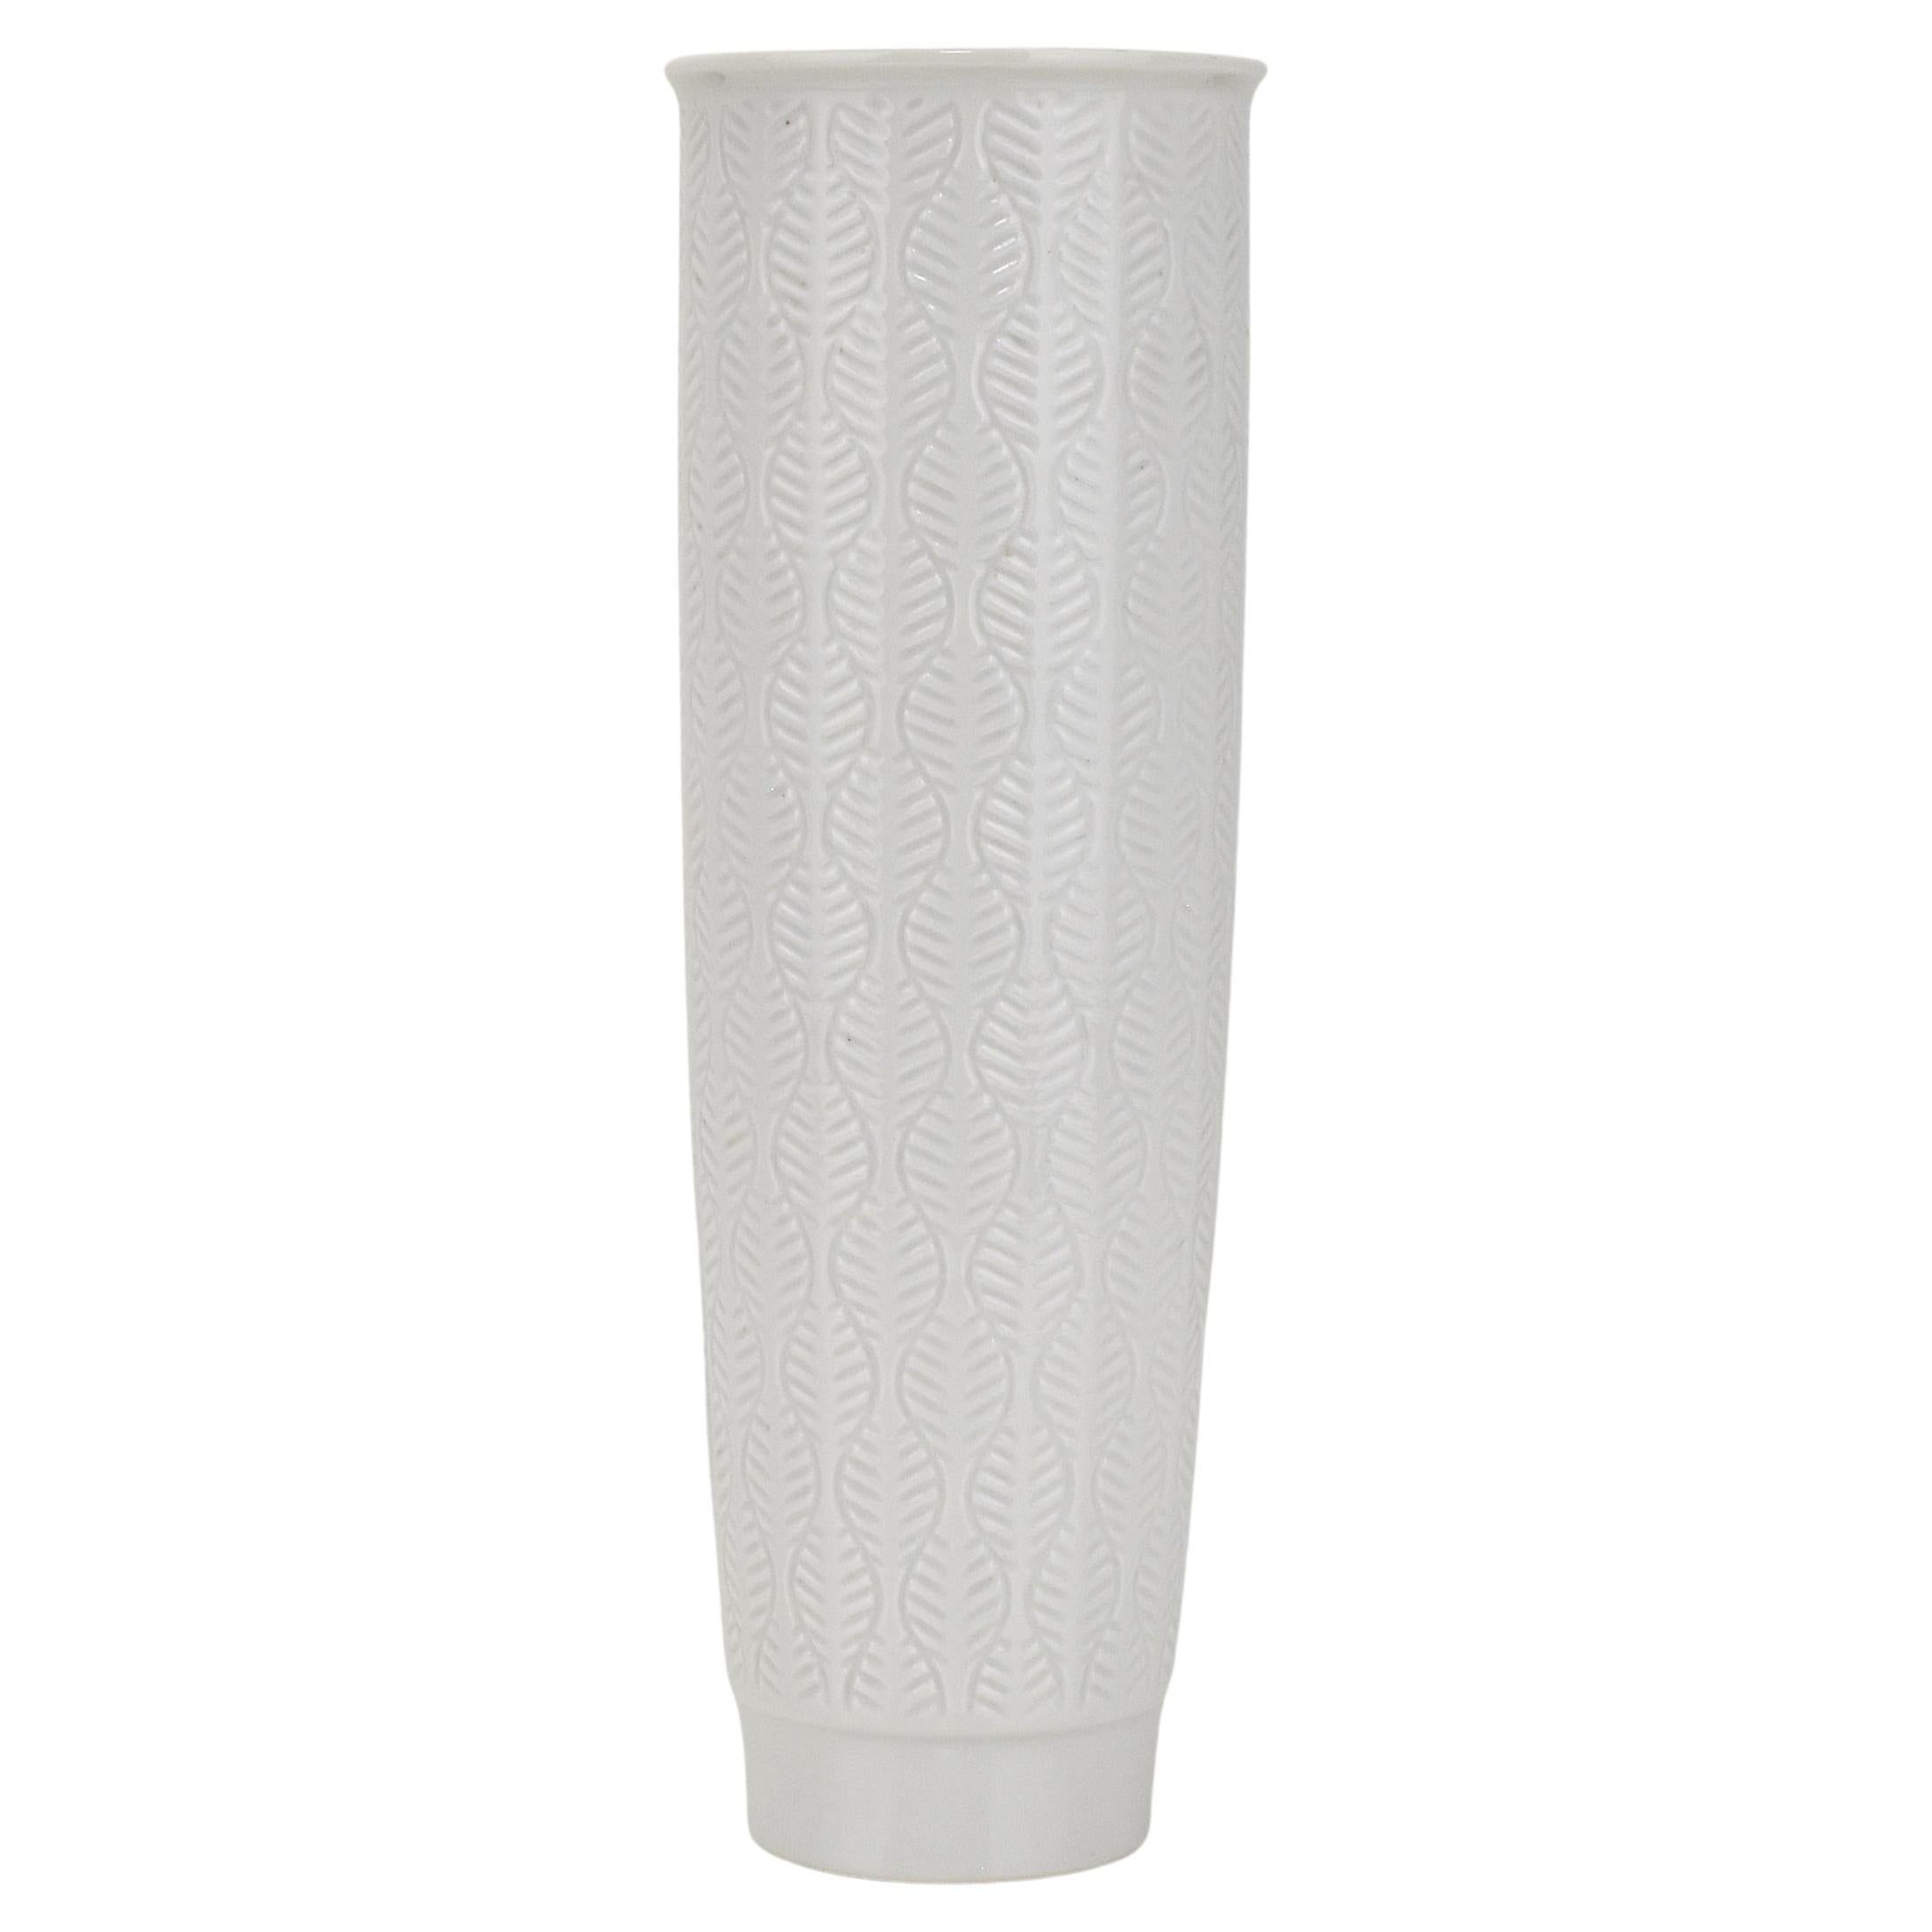 Furstenberg White Porcelain Vase Floral Organic Leaf Relief Pattern For Sale